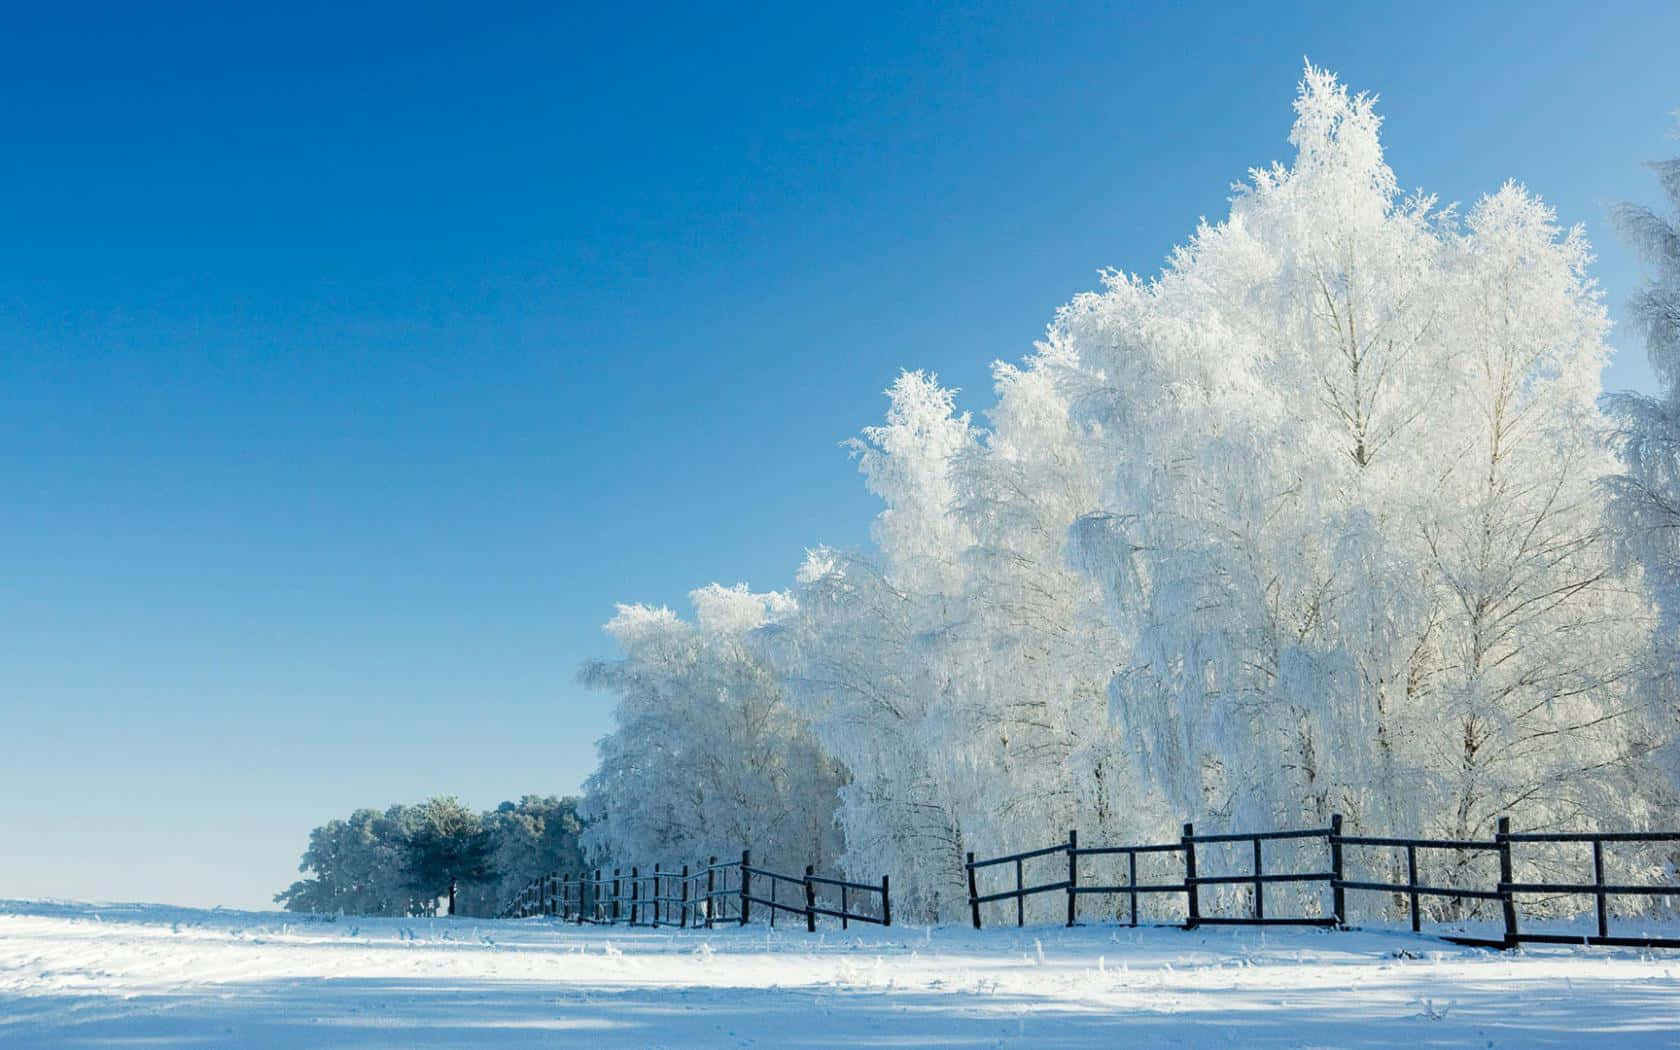 Pure white winter scene